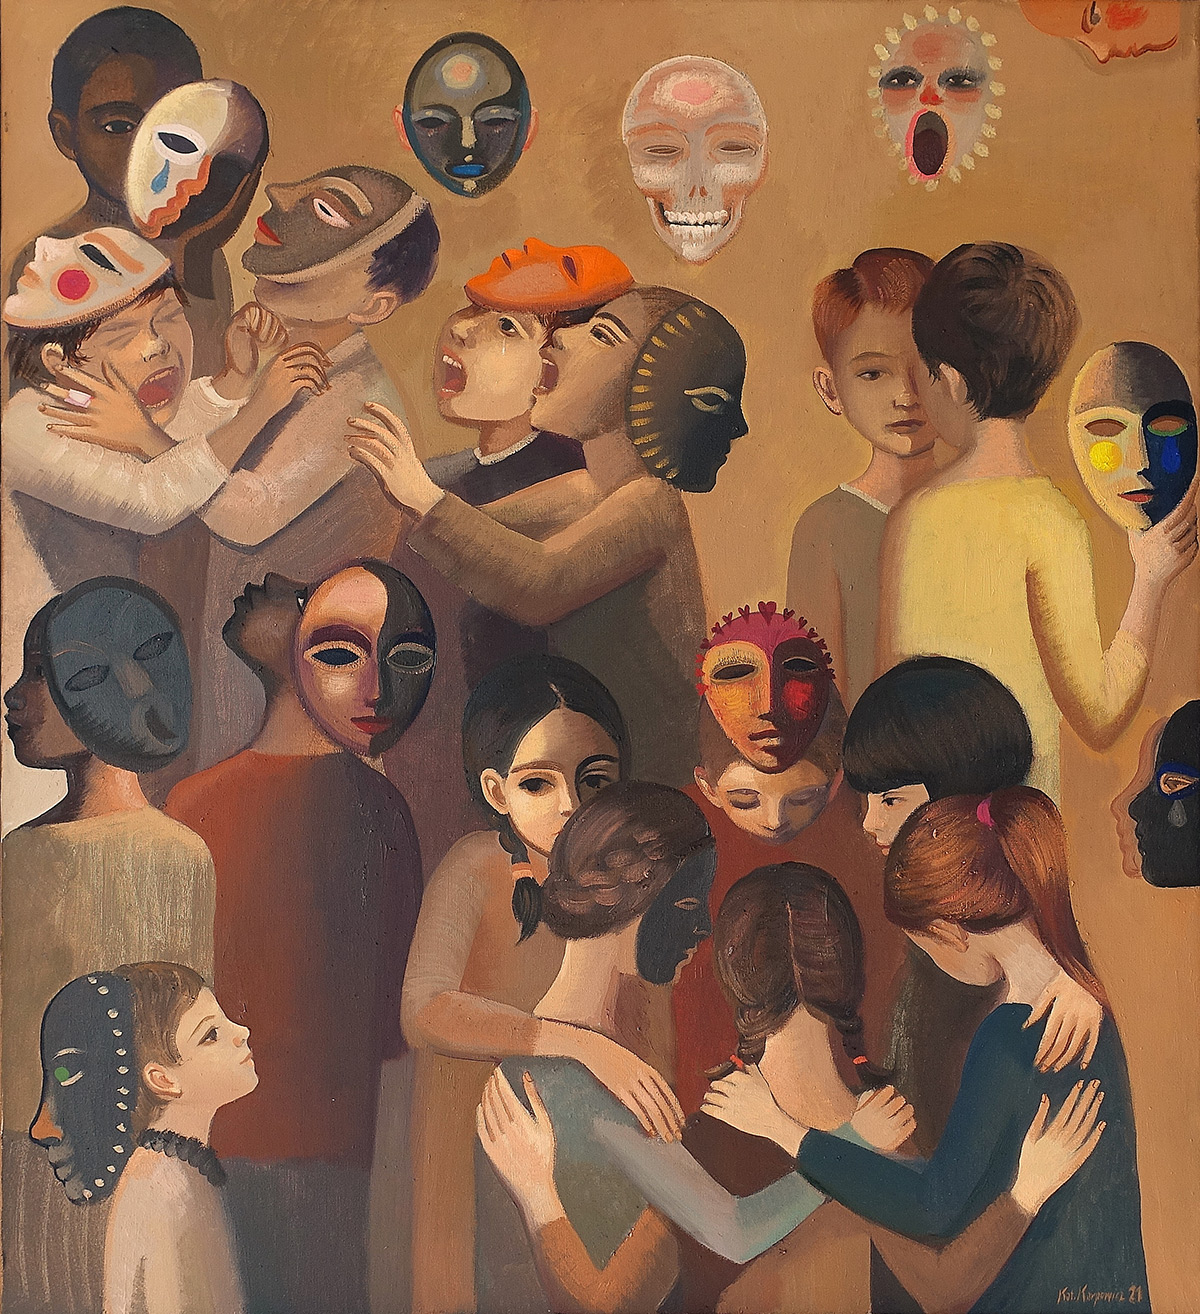 Katarzyna Karpowicz - Children and masks II (Oil on Canvas | Size: 106 x 116 cm | Price: 25000 PLN)